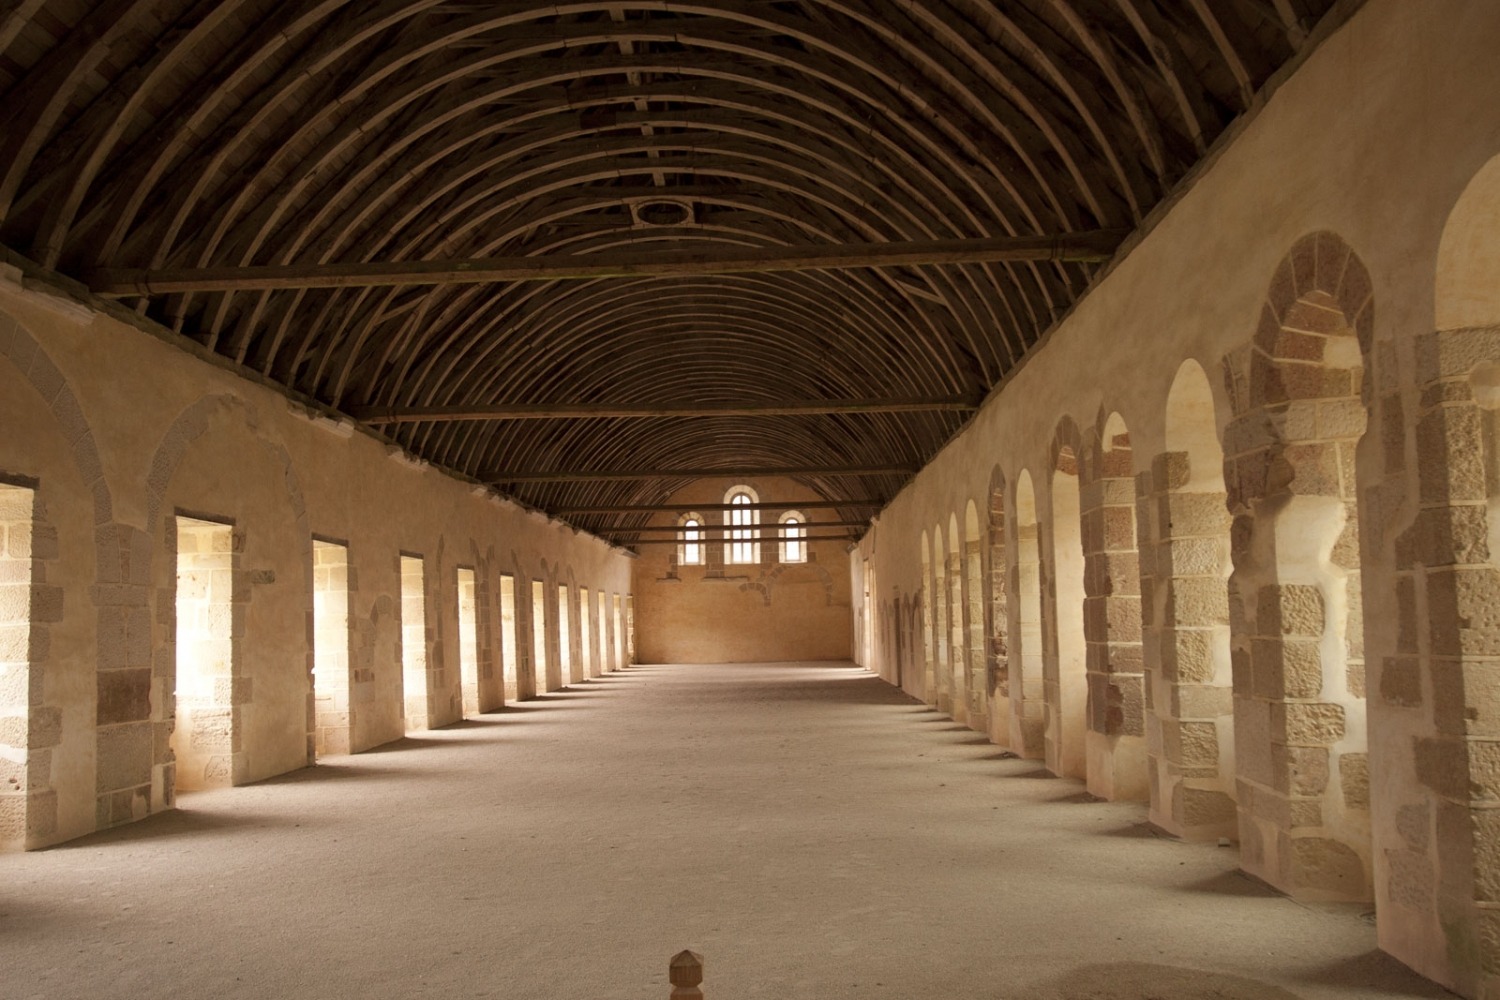 Slaapruimte in het klooster van Fontenay